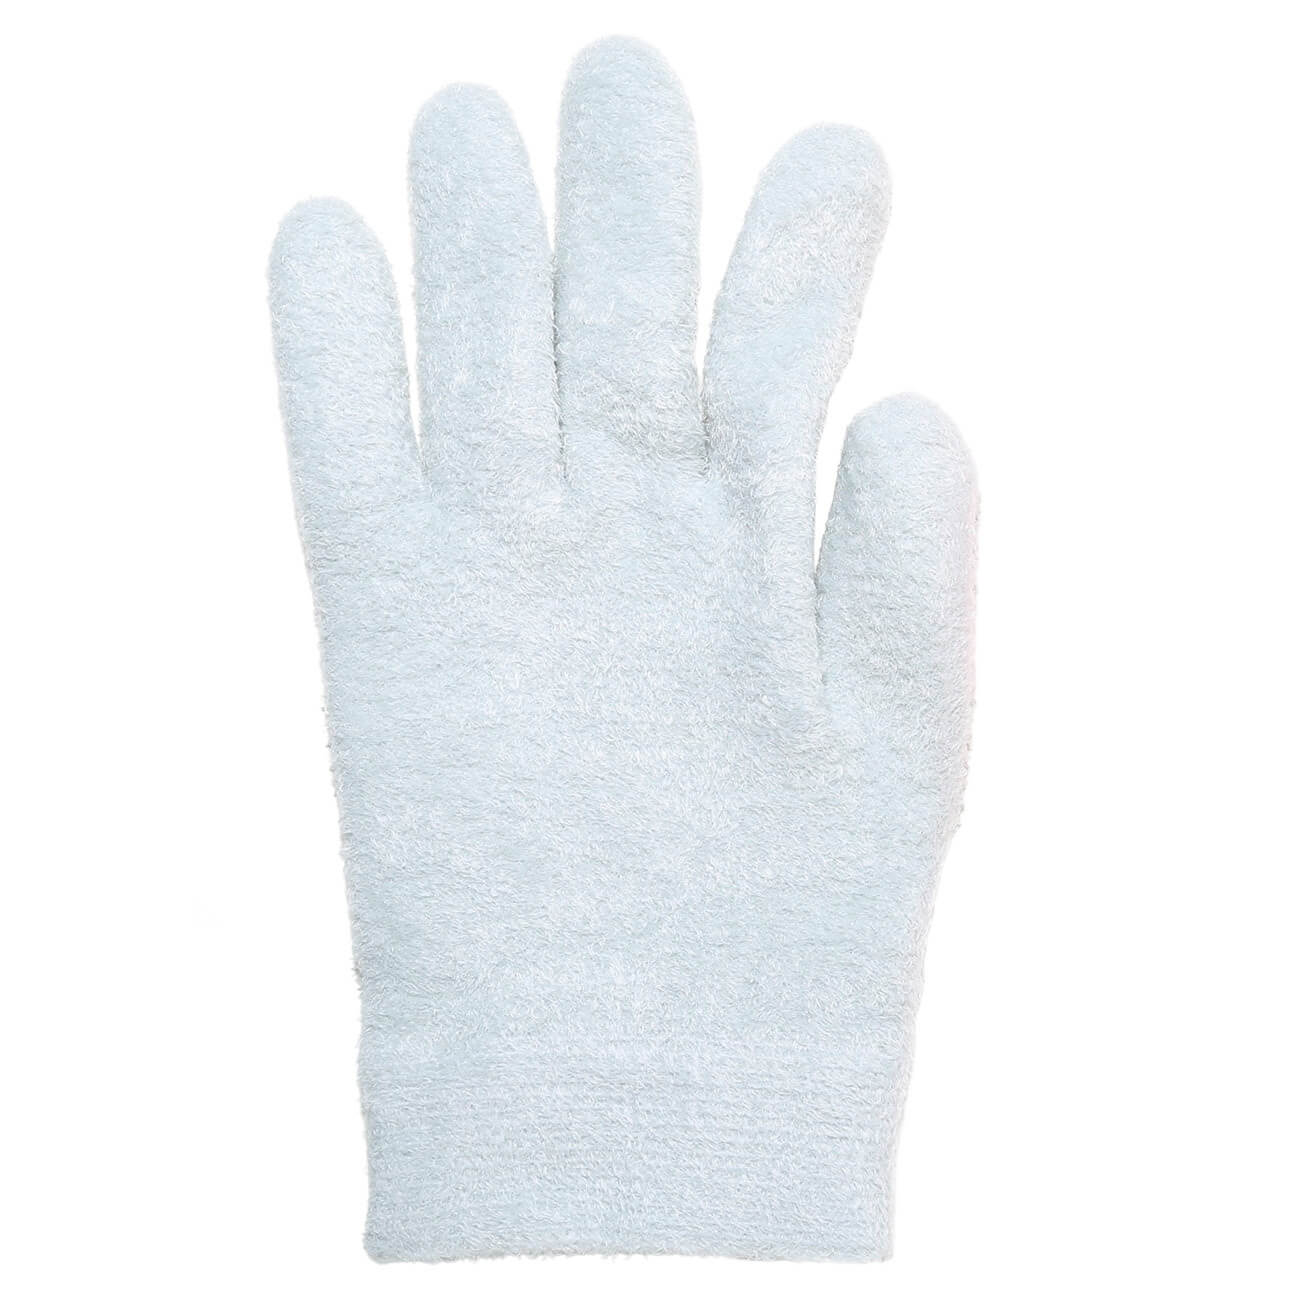 СПА-перчатки гелевые, 20 см, полиэстер, многоразовые, серые, Spa